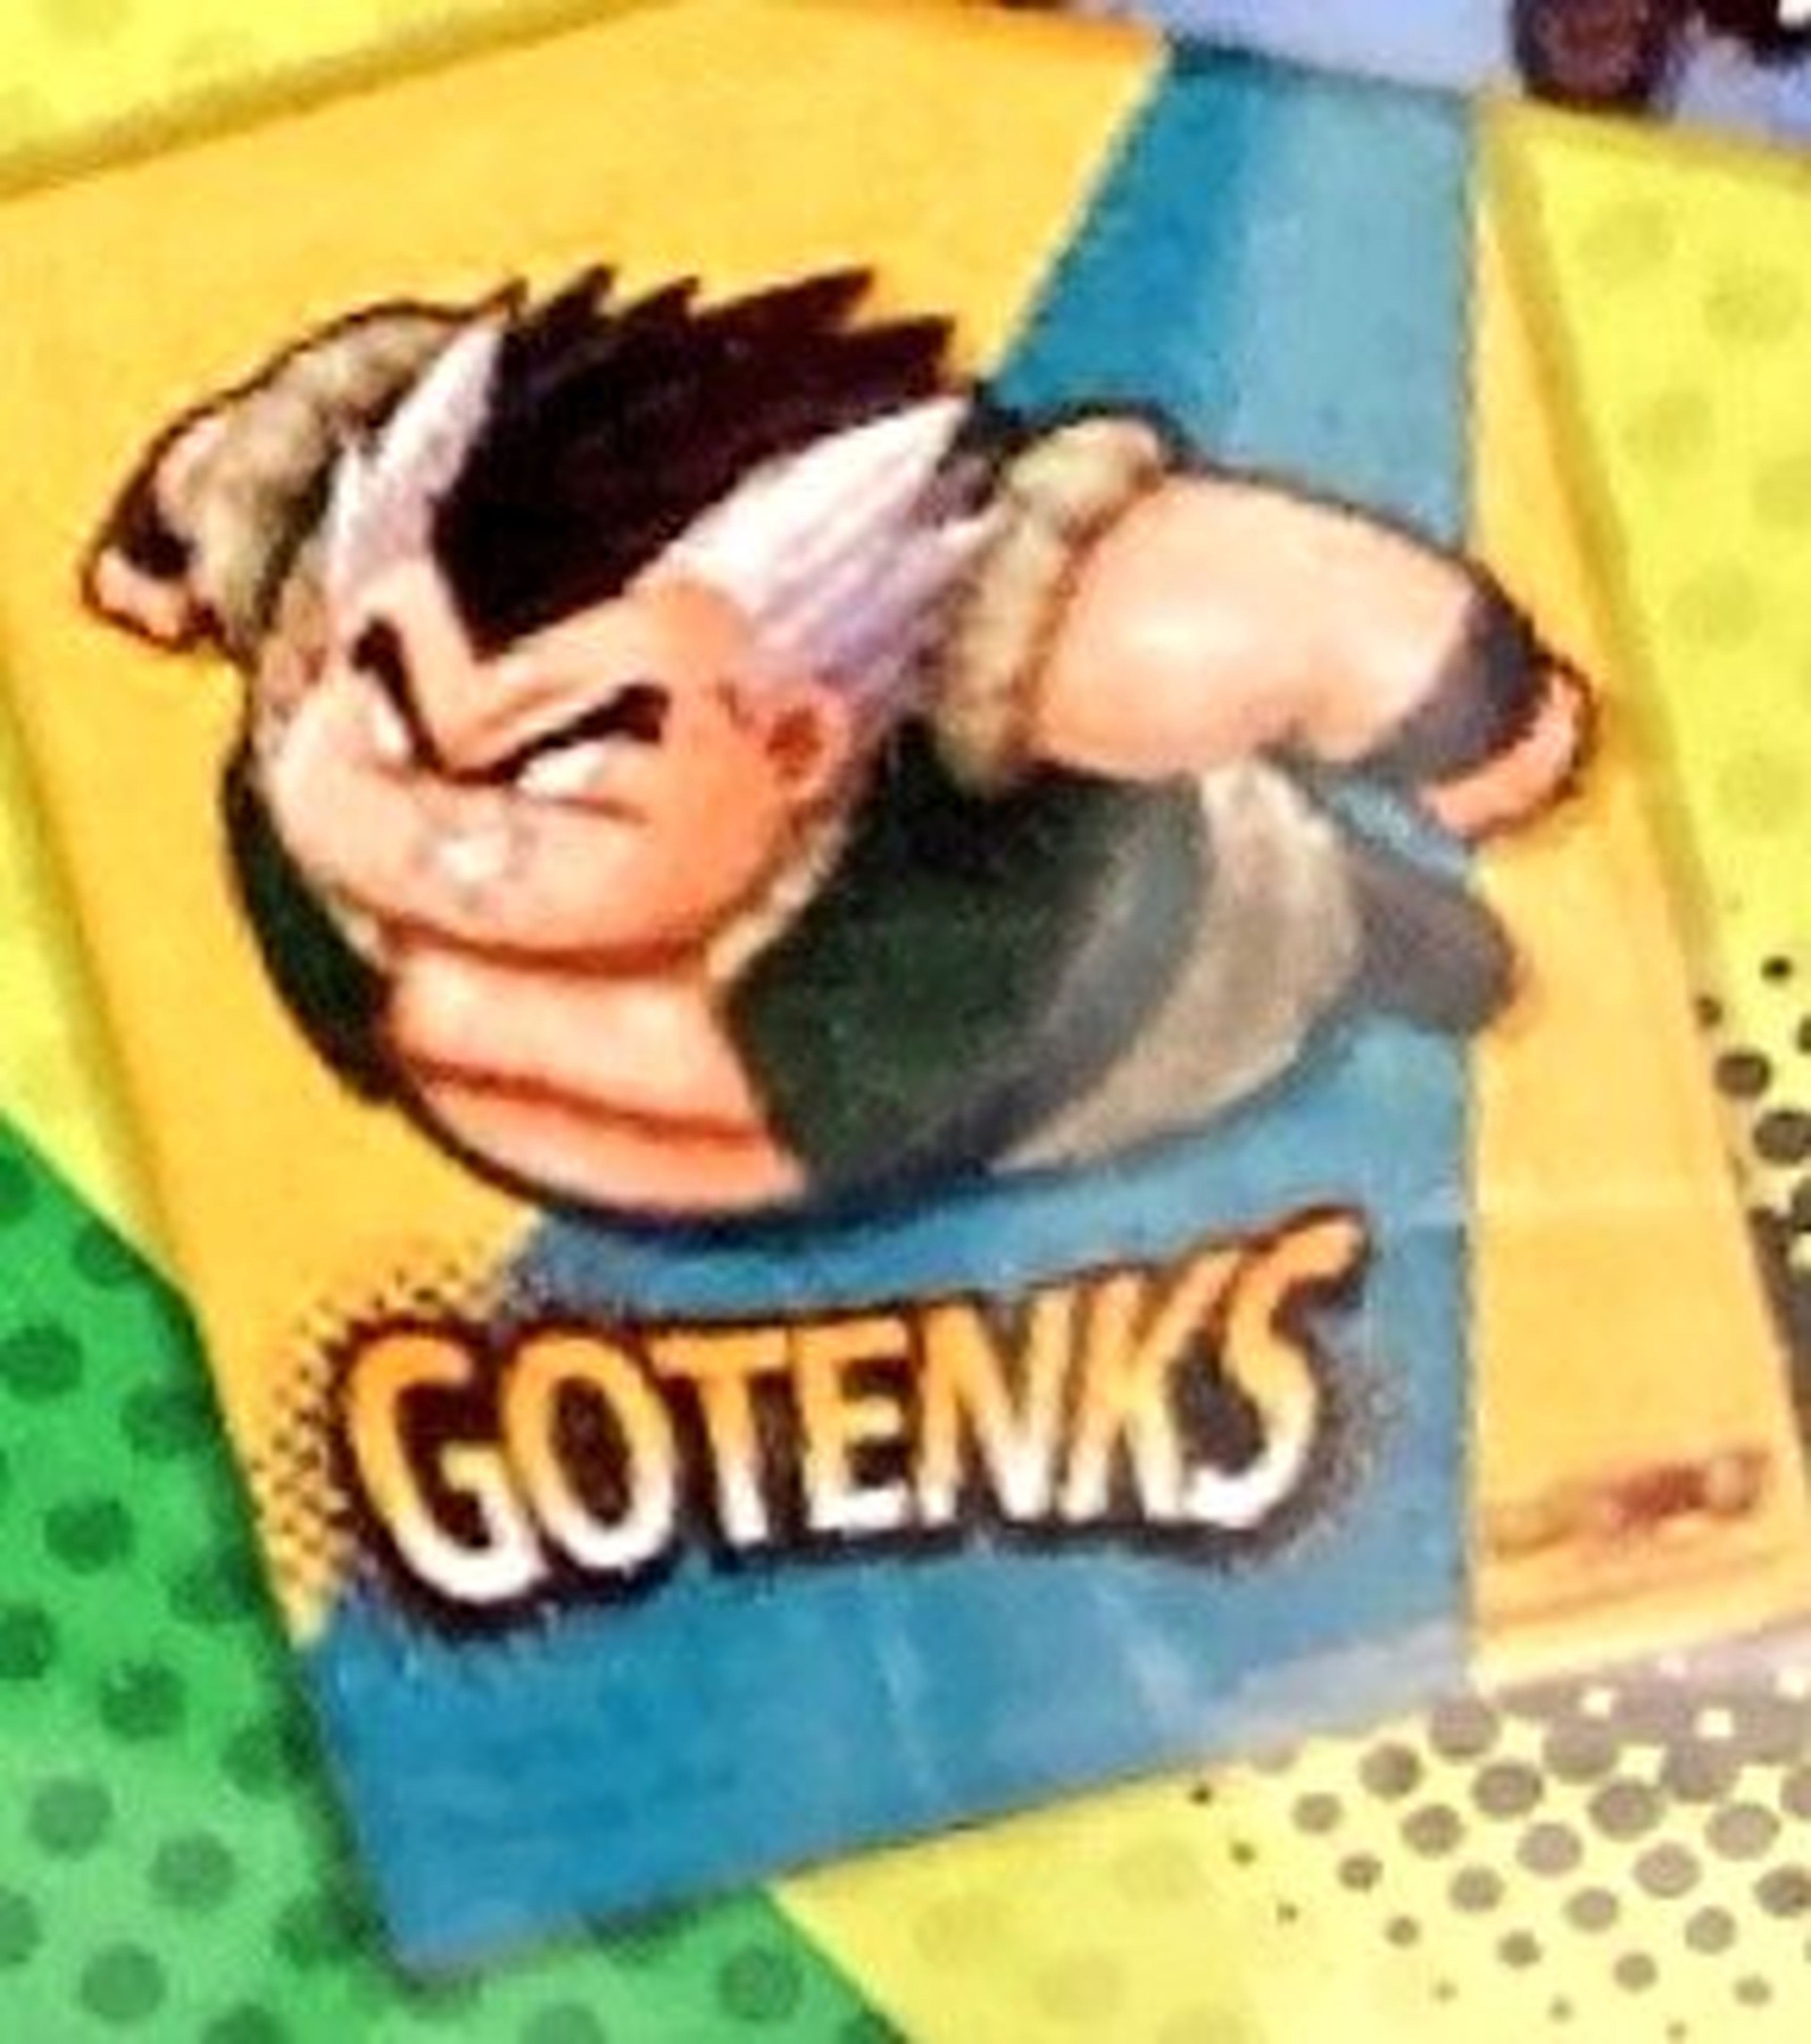 Dragon Ball Super: Super Hero - Desvelada la primera imagen de Gotenks adolescente gordito, la fusión fallida de Goten y Trunks